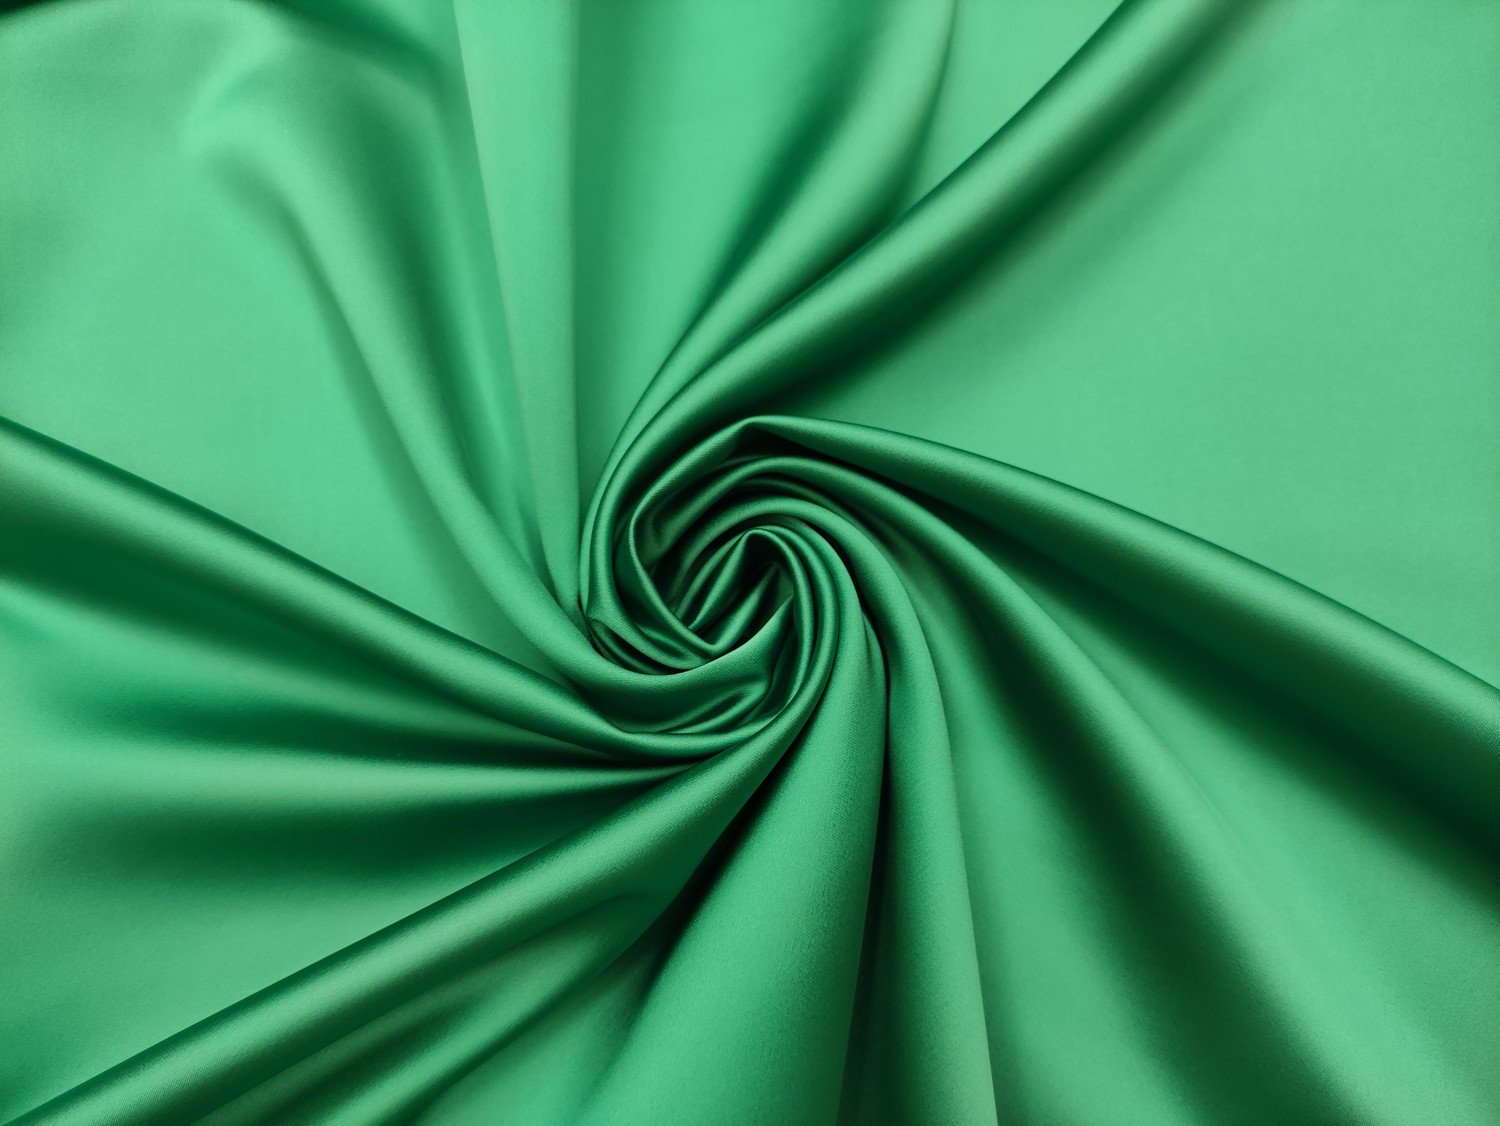 Tessuto Duchesse elasticizzato in tinta unita verde smeraldo - Iaia Tessuti